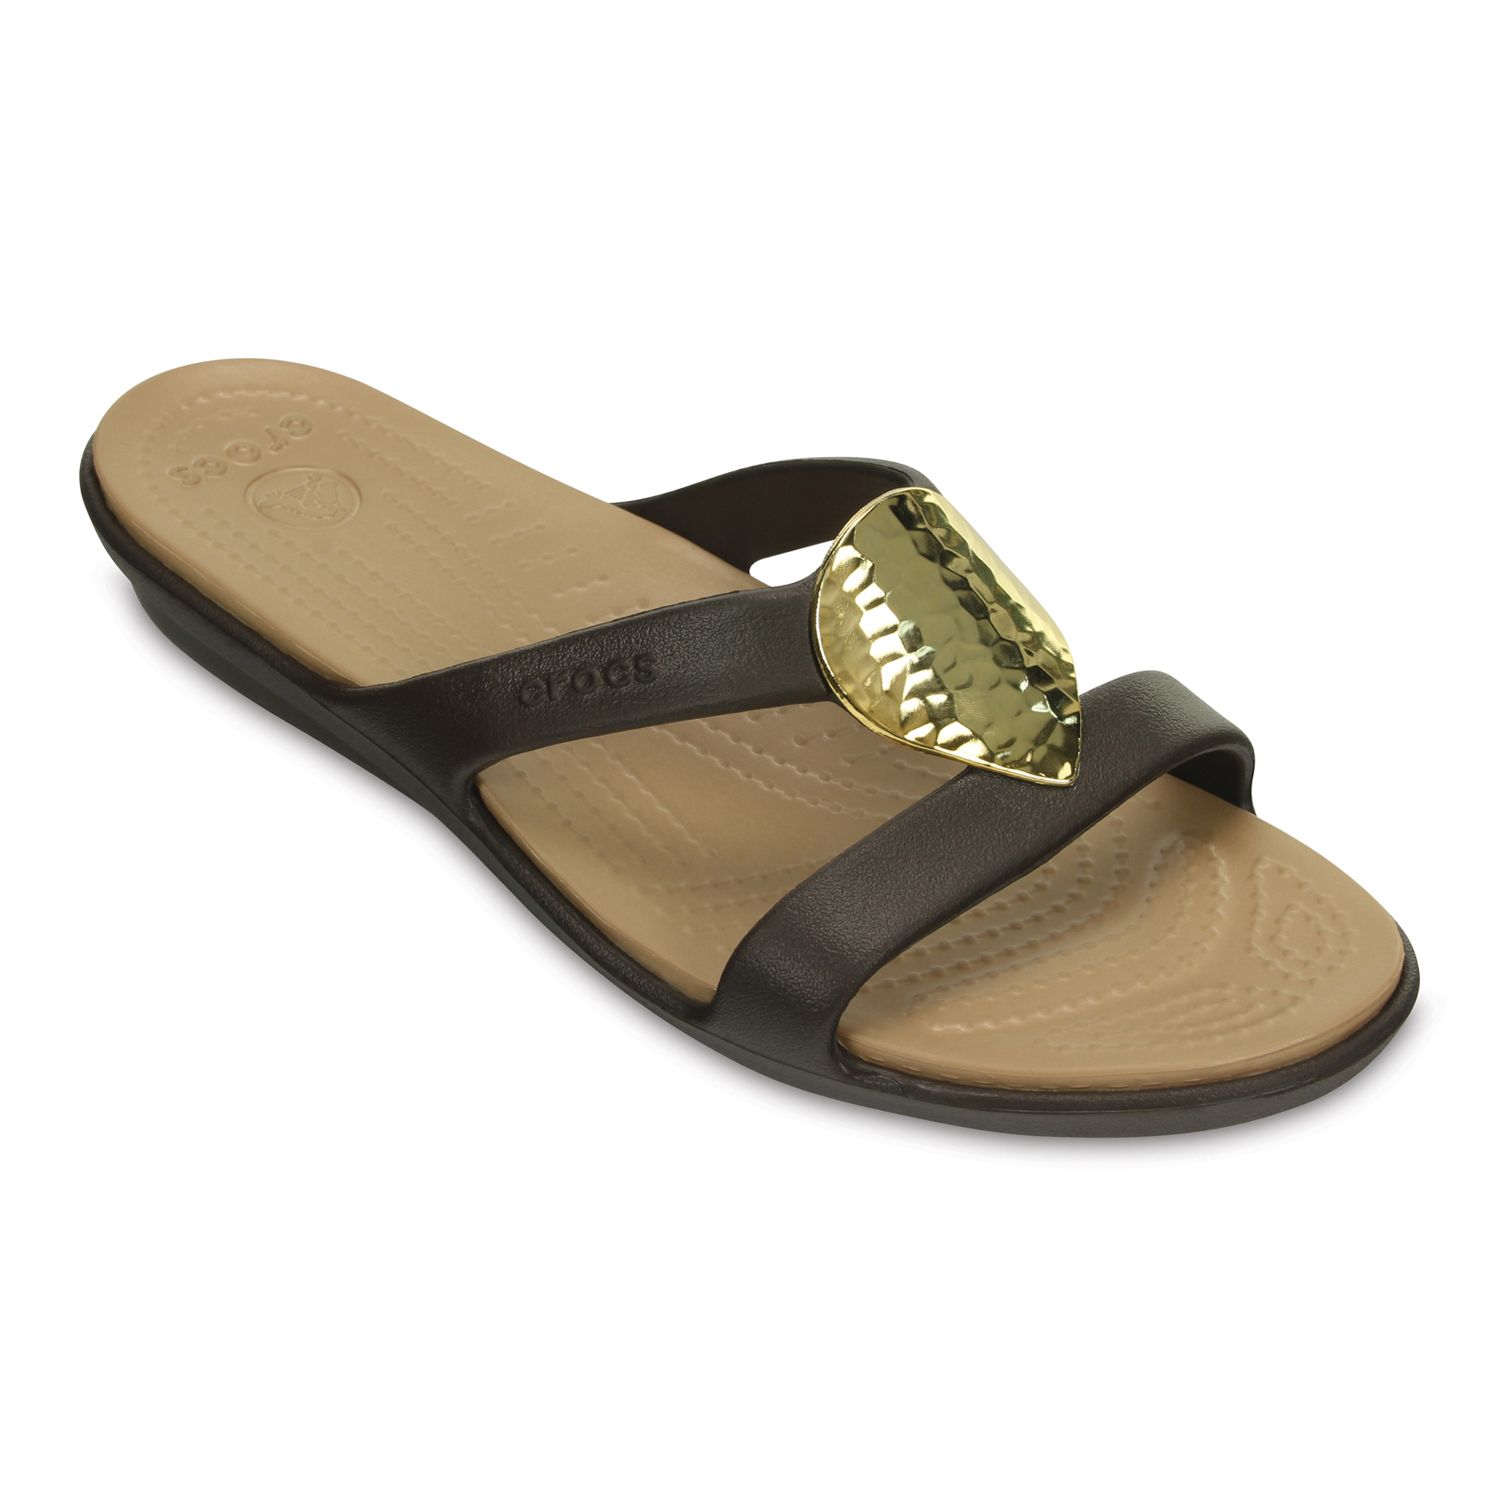 crocs women's sanrah hammered metallic sandal